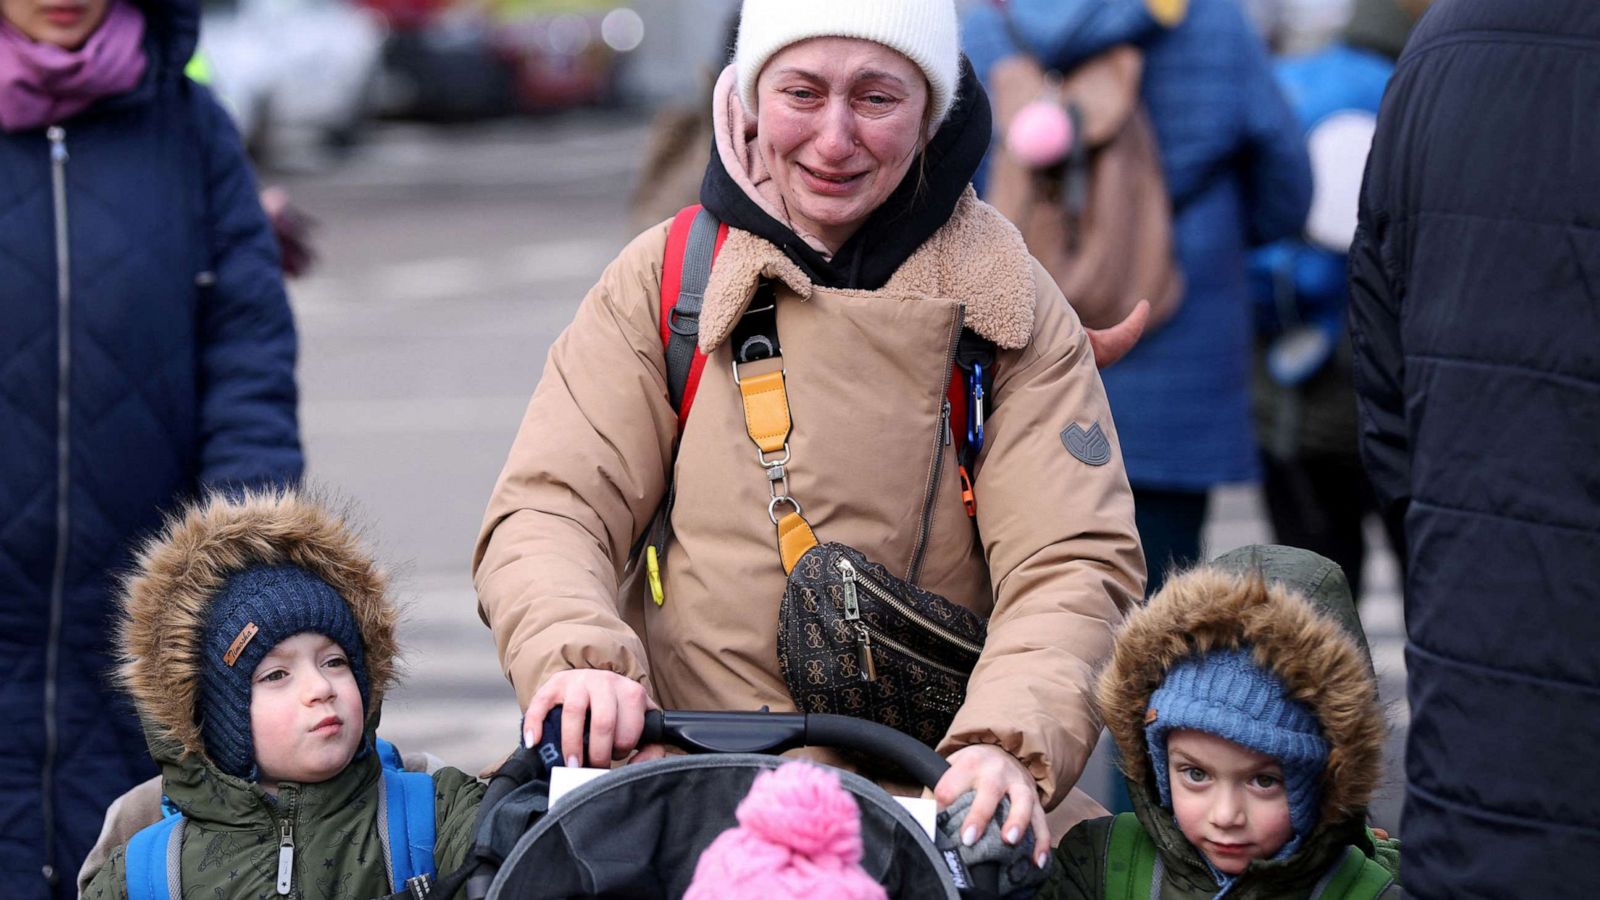 https://s.abcnews.com/images/Health/refugee-family-ukraine-rt-ps-220301_1646153536012_hpMain_16x9_1600.jpg